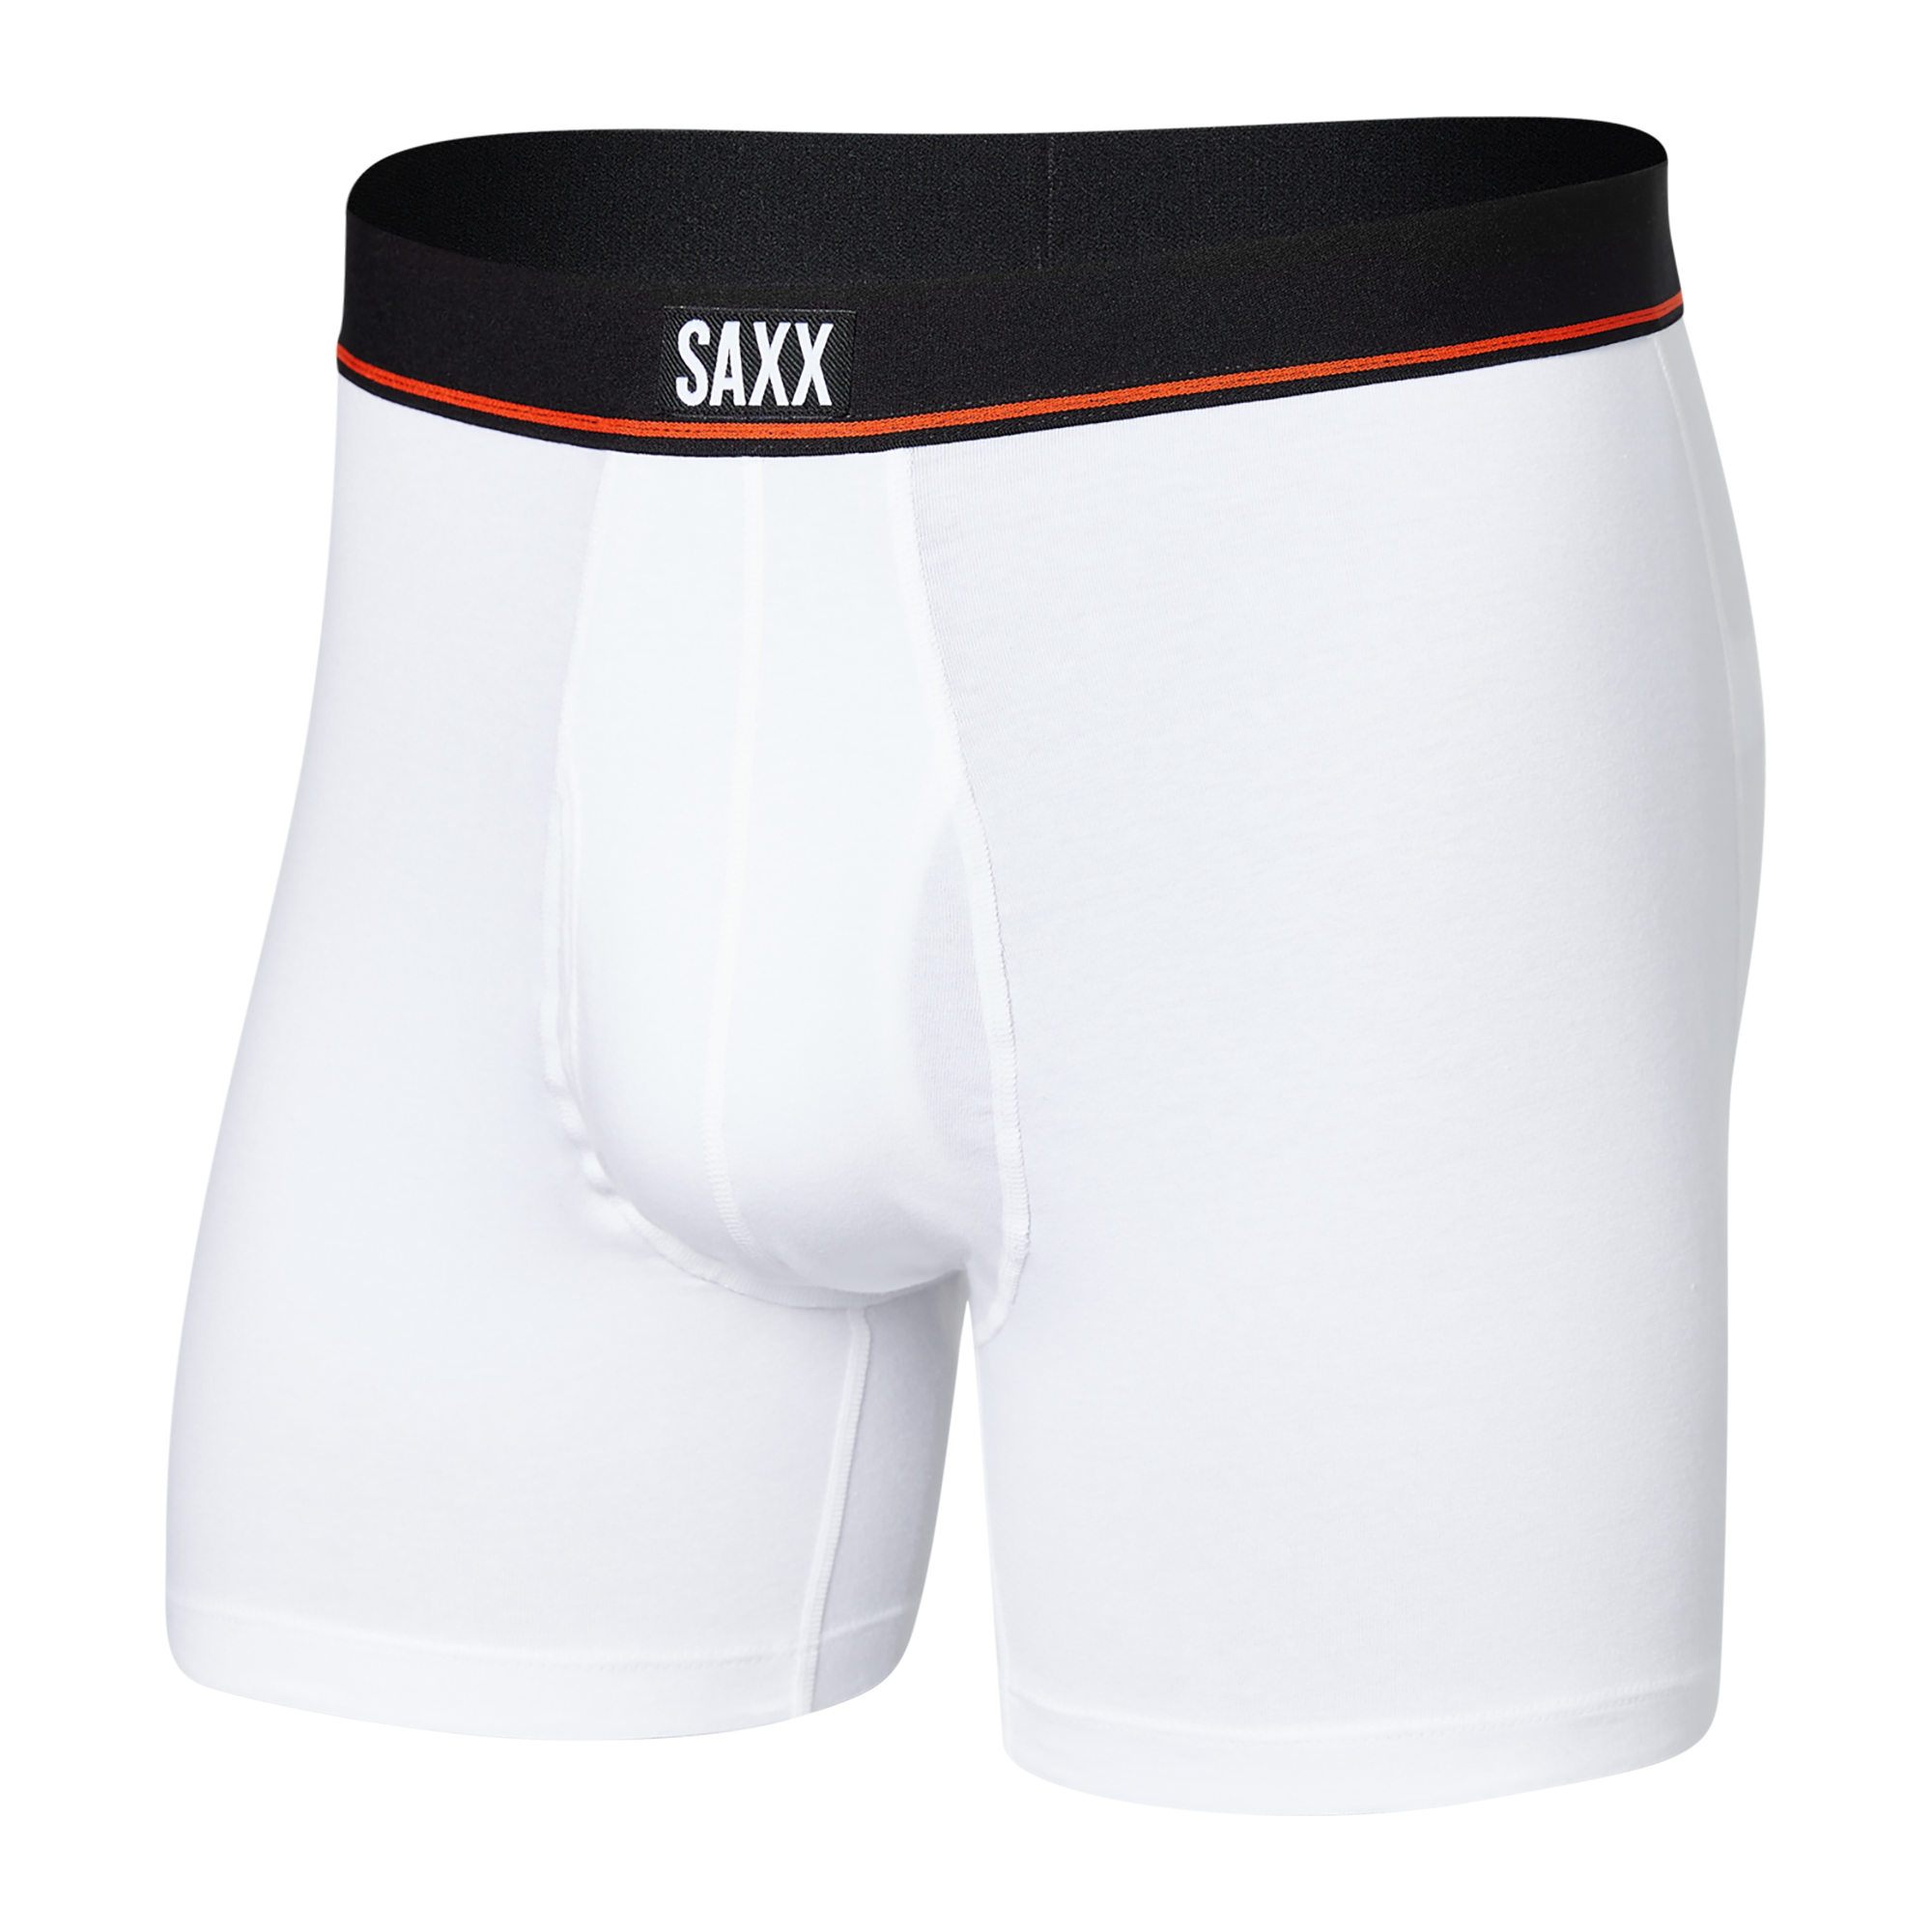 Cheap BONITOS 4Pcs Boxers Solid Color Sexy Men's Panties Cotton